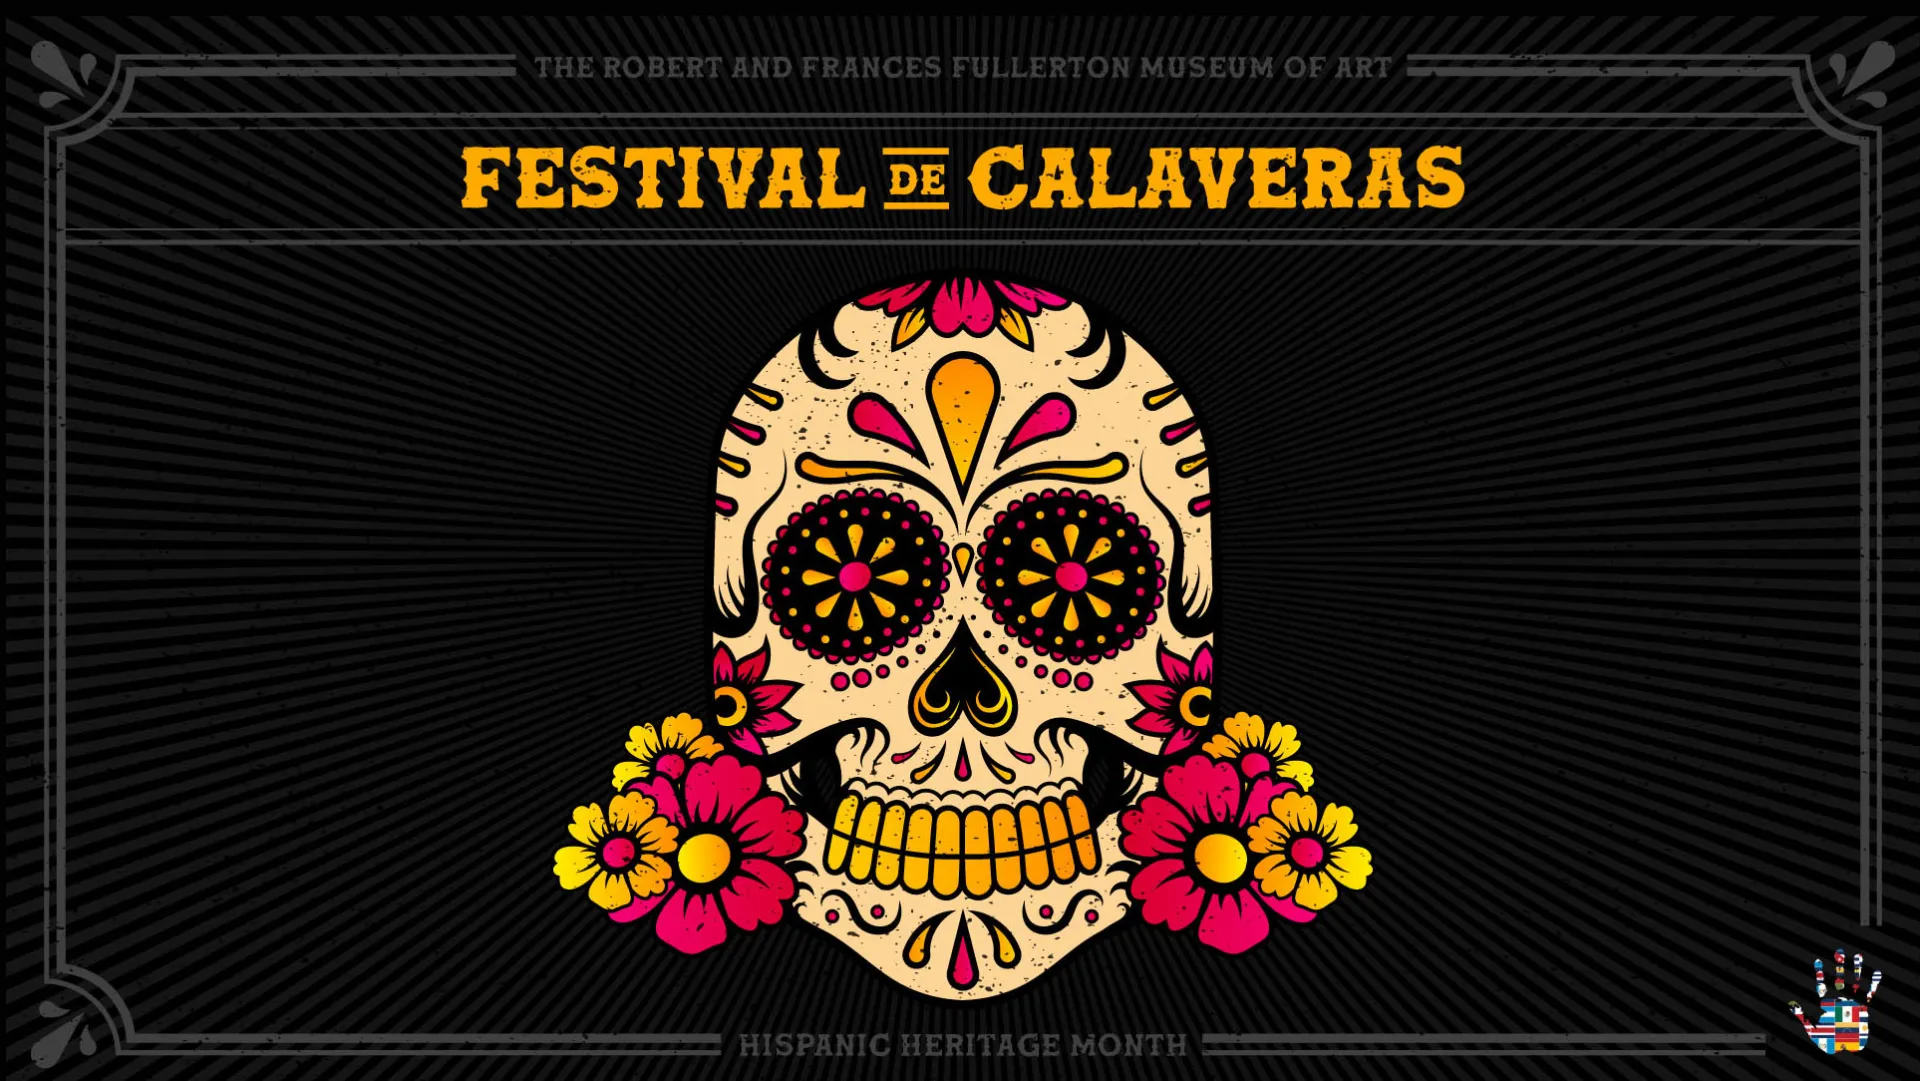 RAFFMA presents Festival de Calaveras